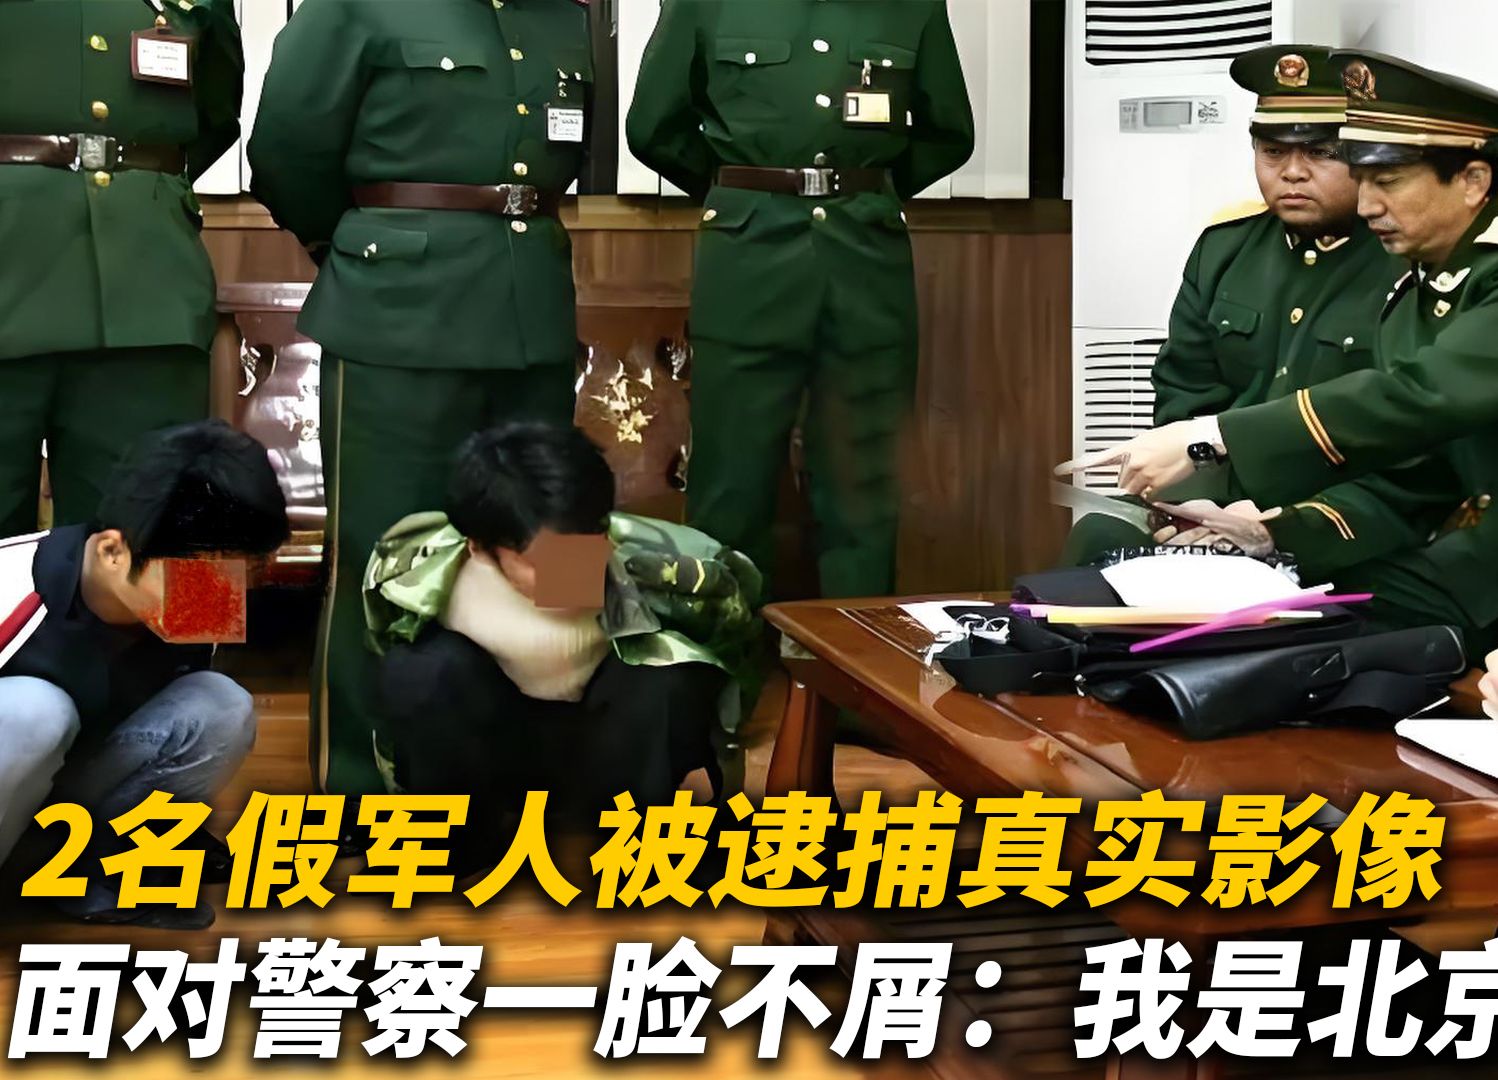 2名假军人被逮捕真实影像,面对警察一脸不屑:我是北京军区的